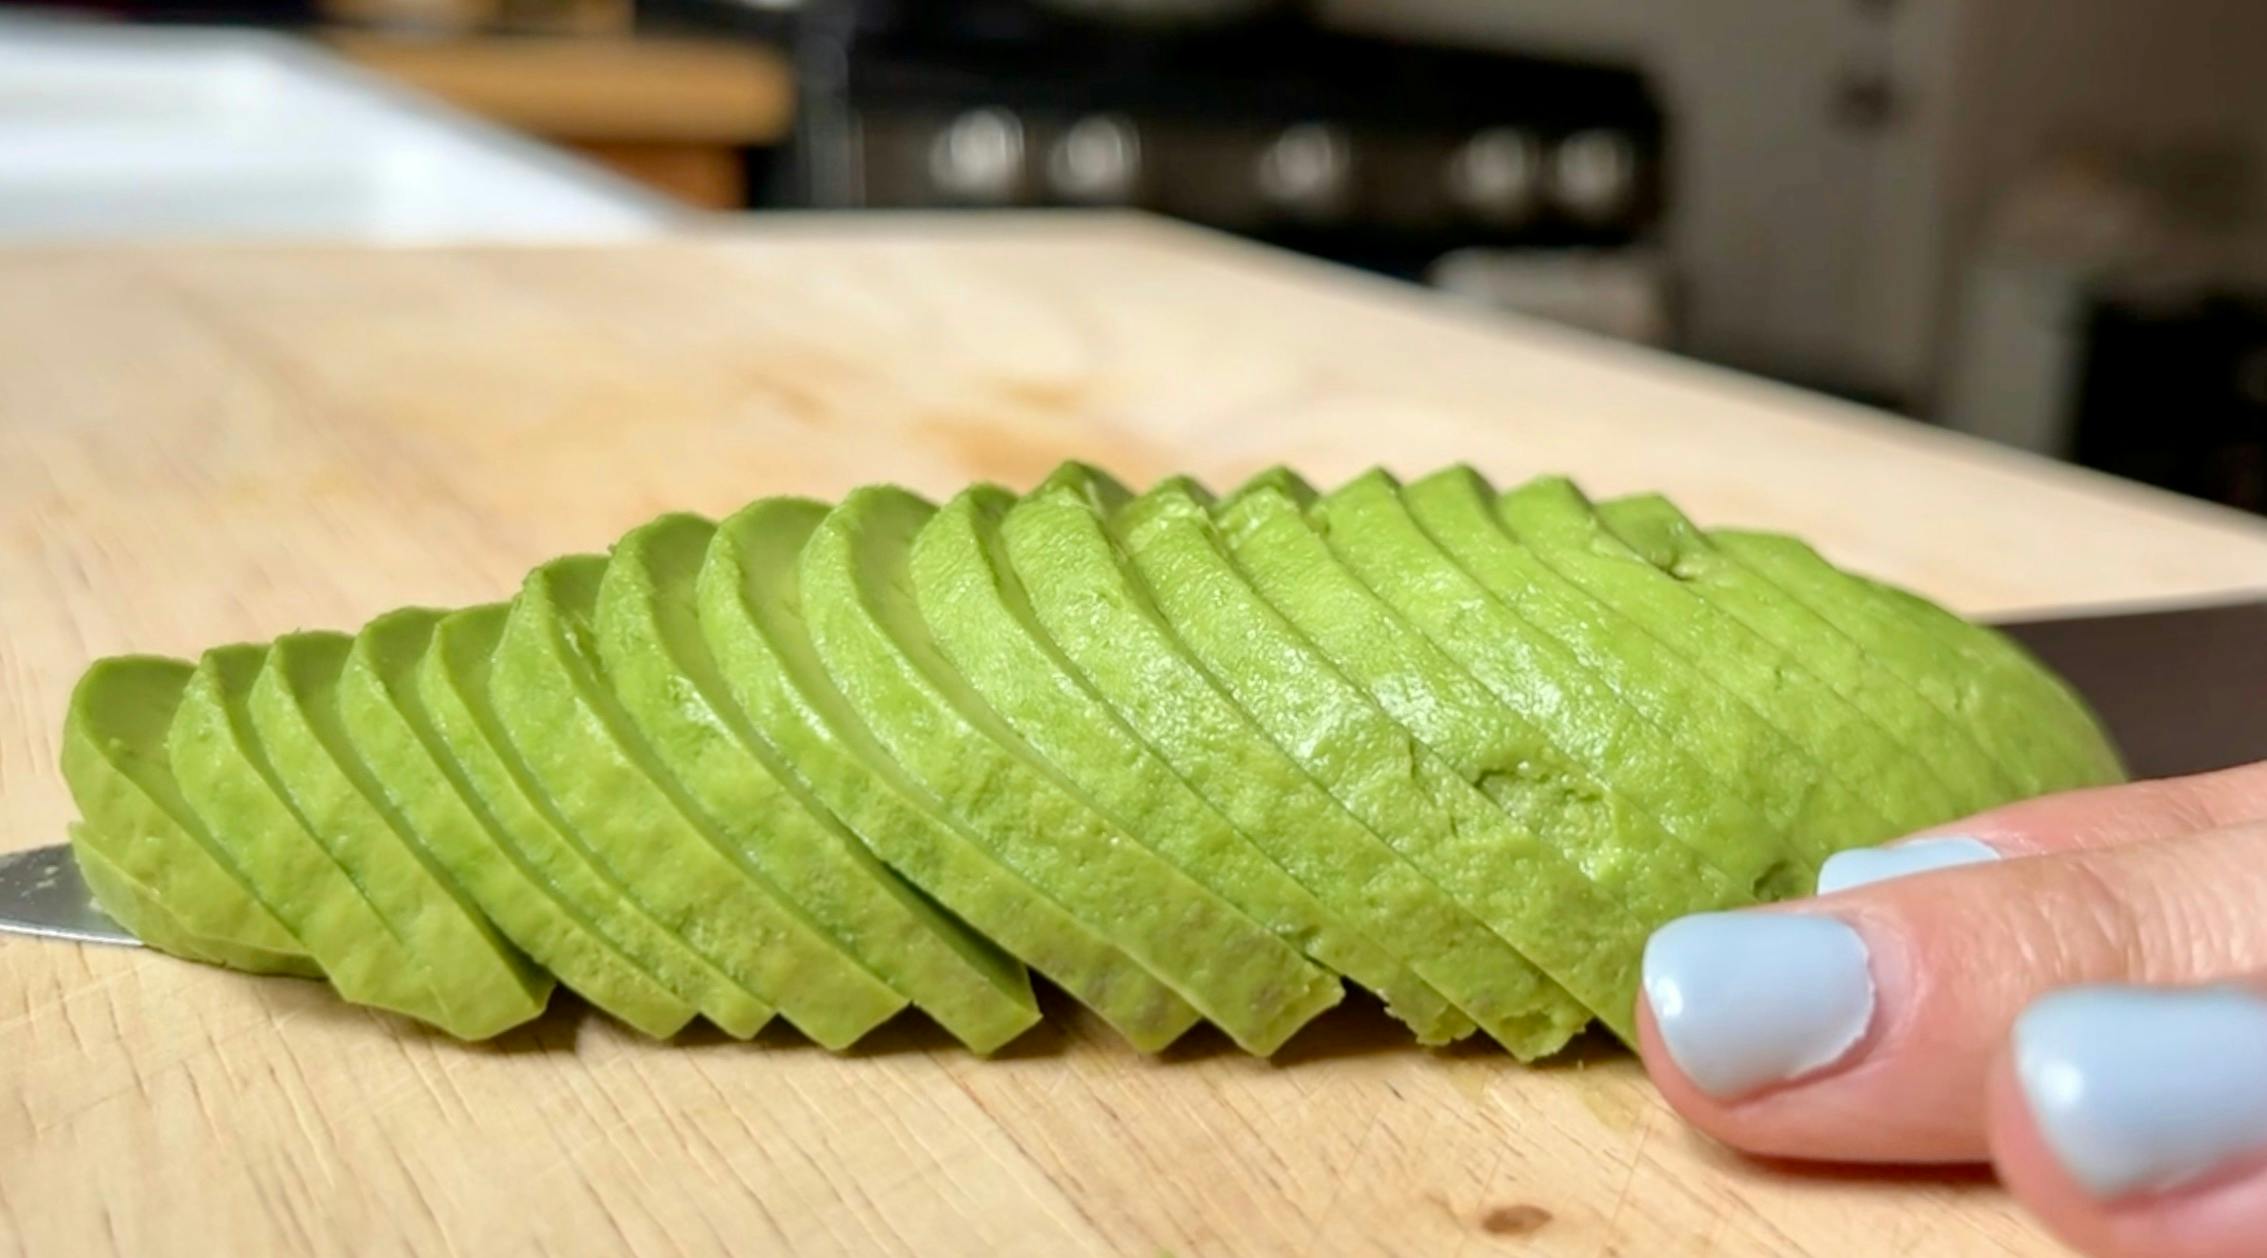 A thinly sliced avocado